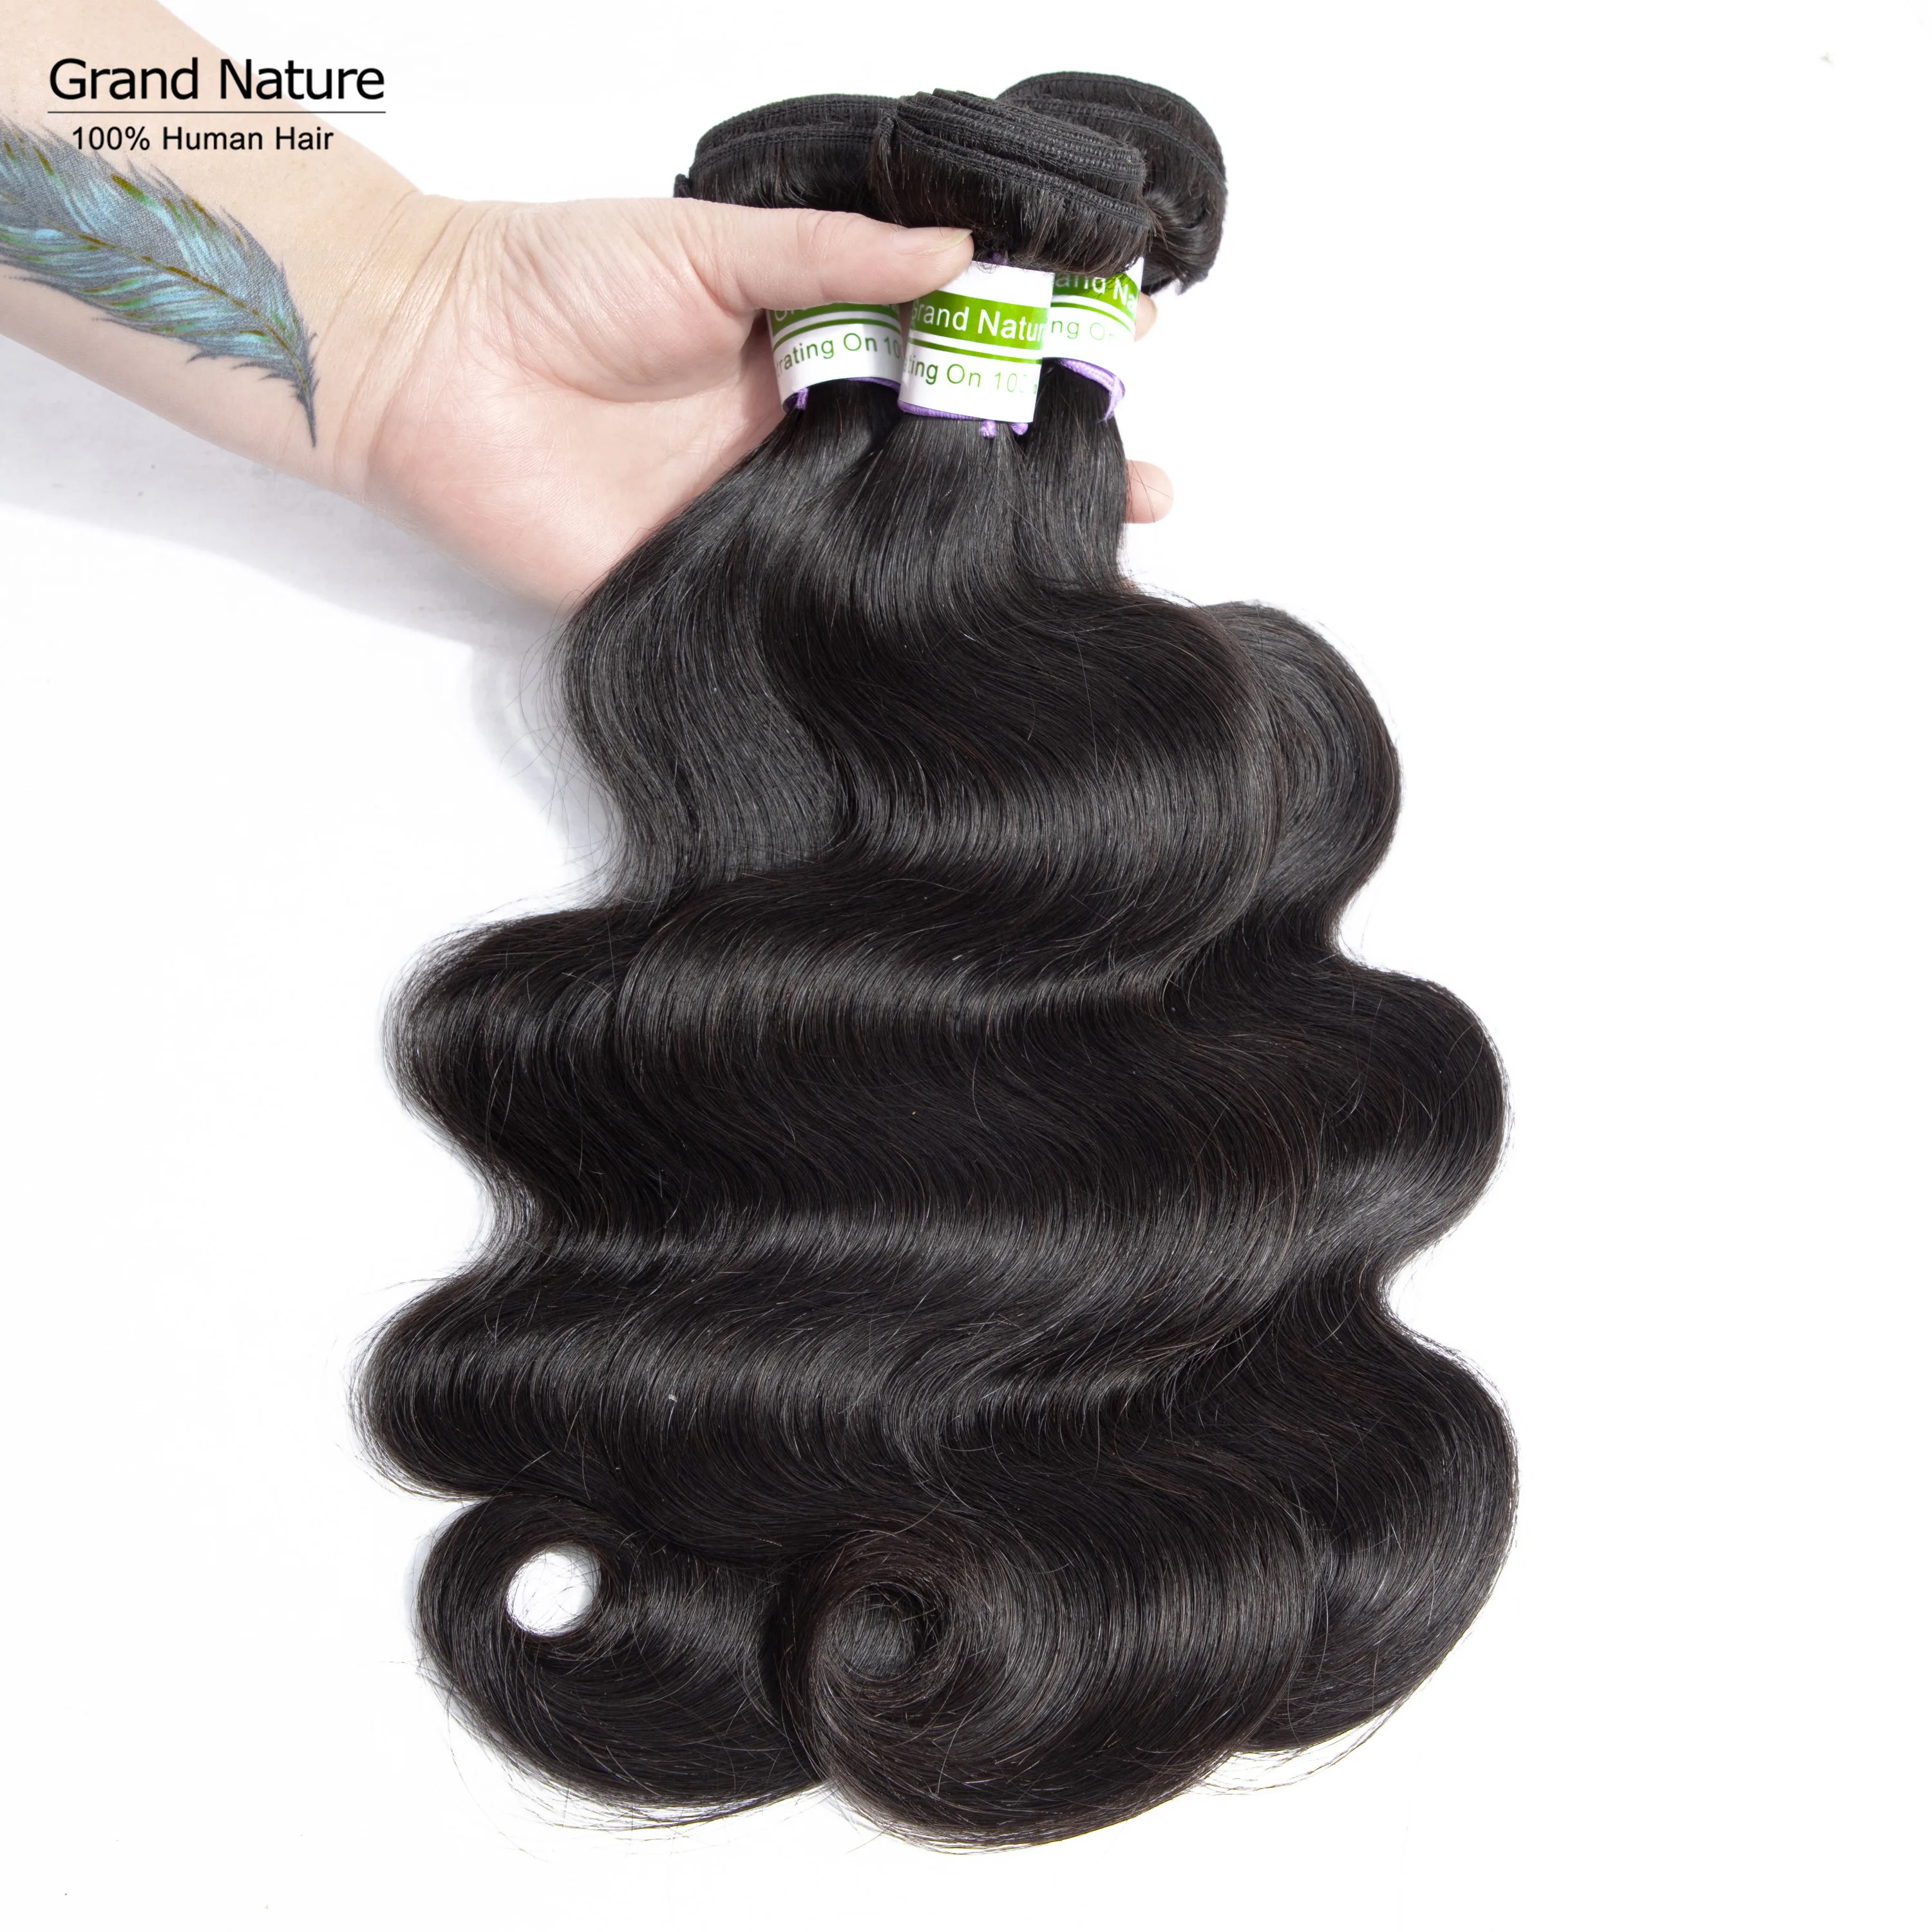 Гранд природы бразильские волосы категории virgin Комплект s 8 до 26 дюймов бразильские волнистые волосы для наращивания Remy человеческие